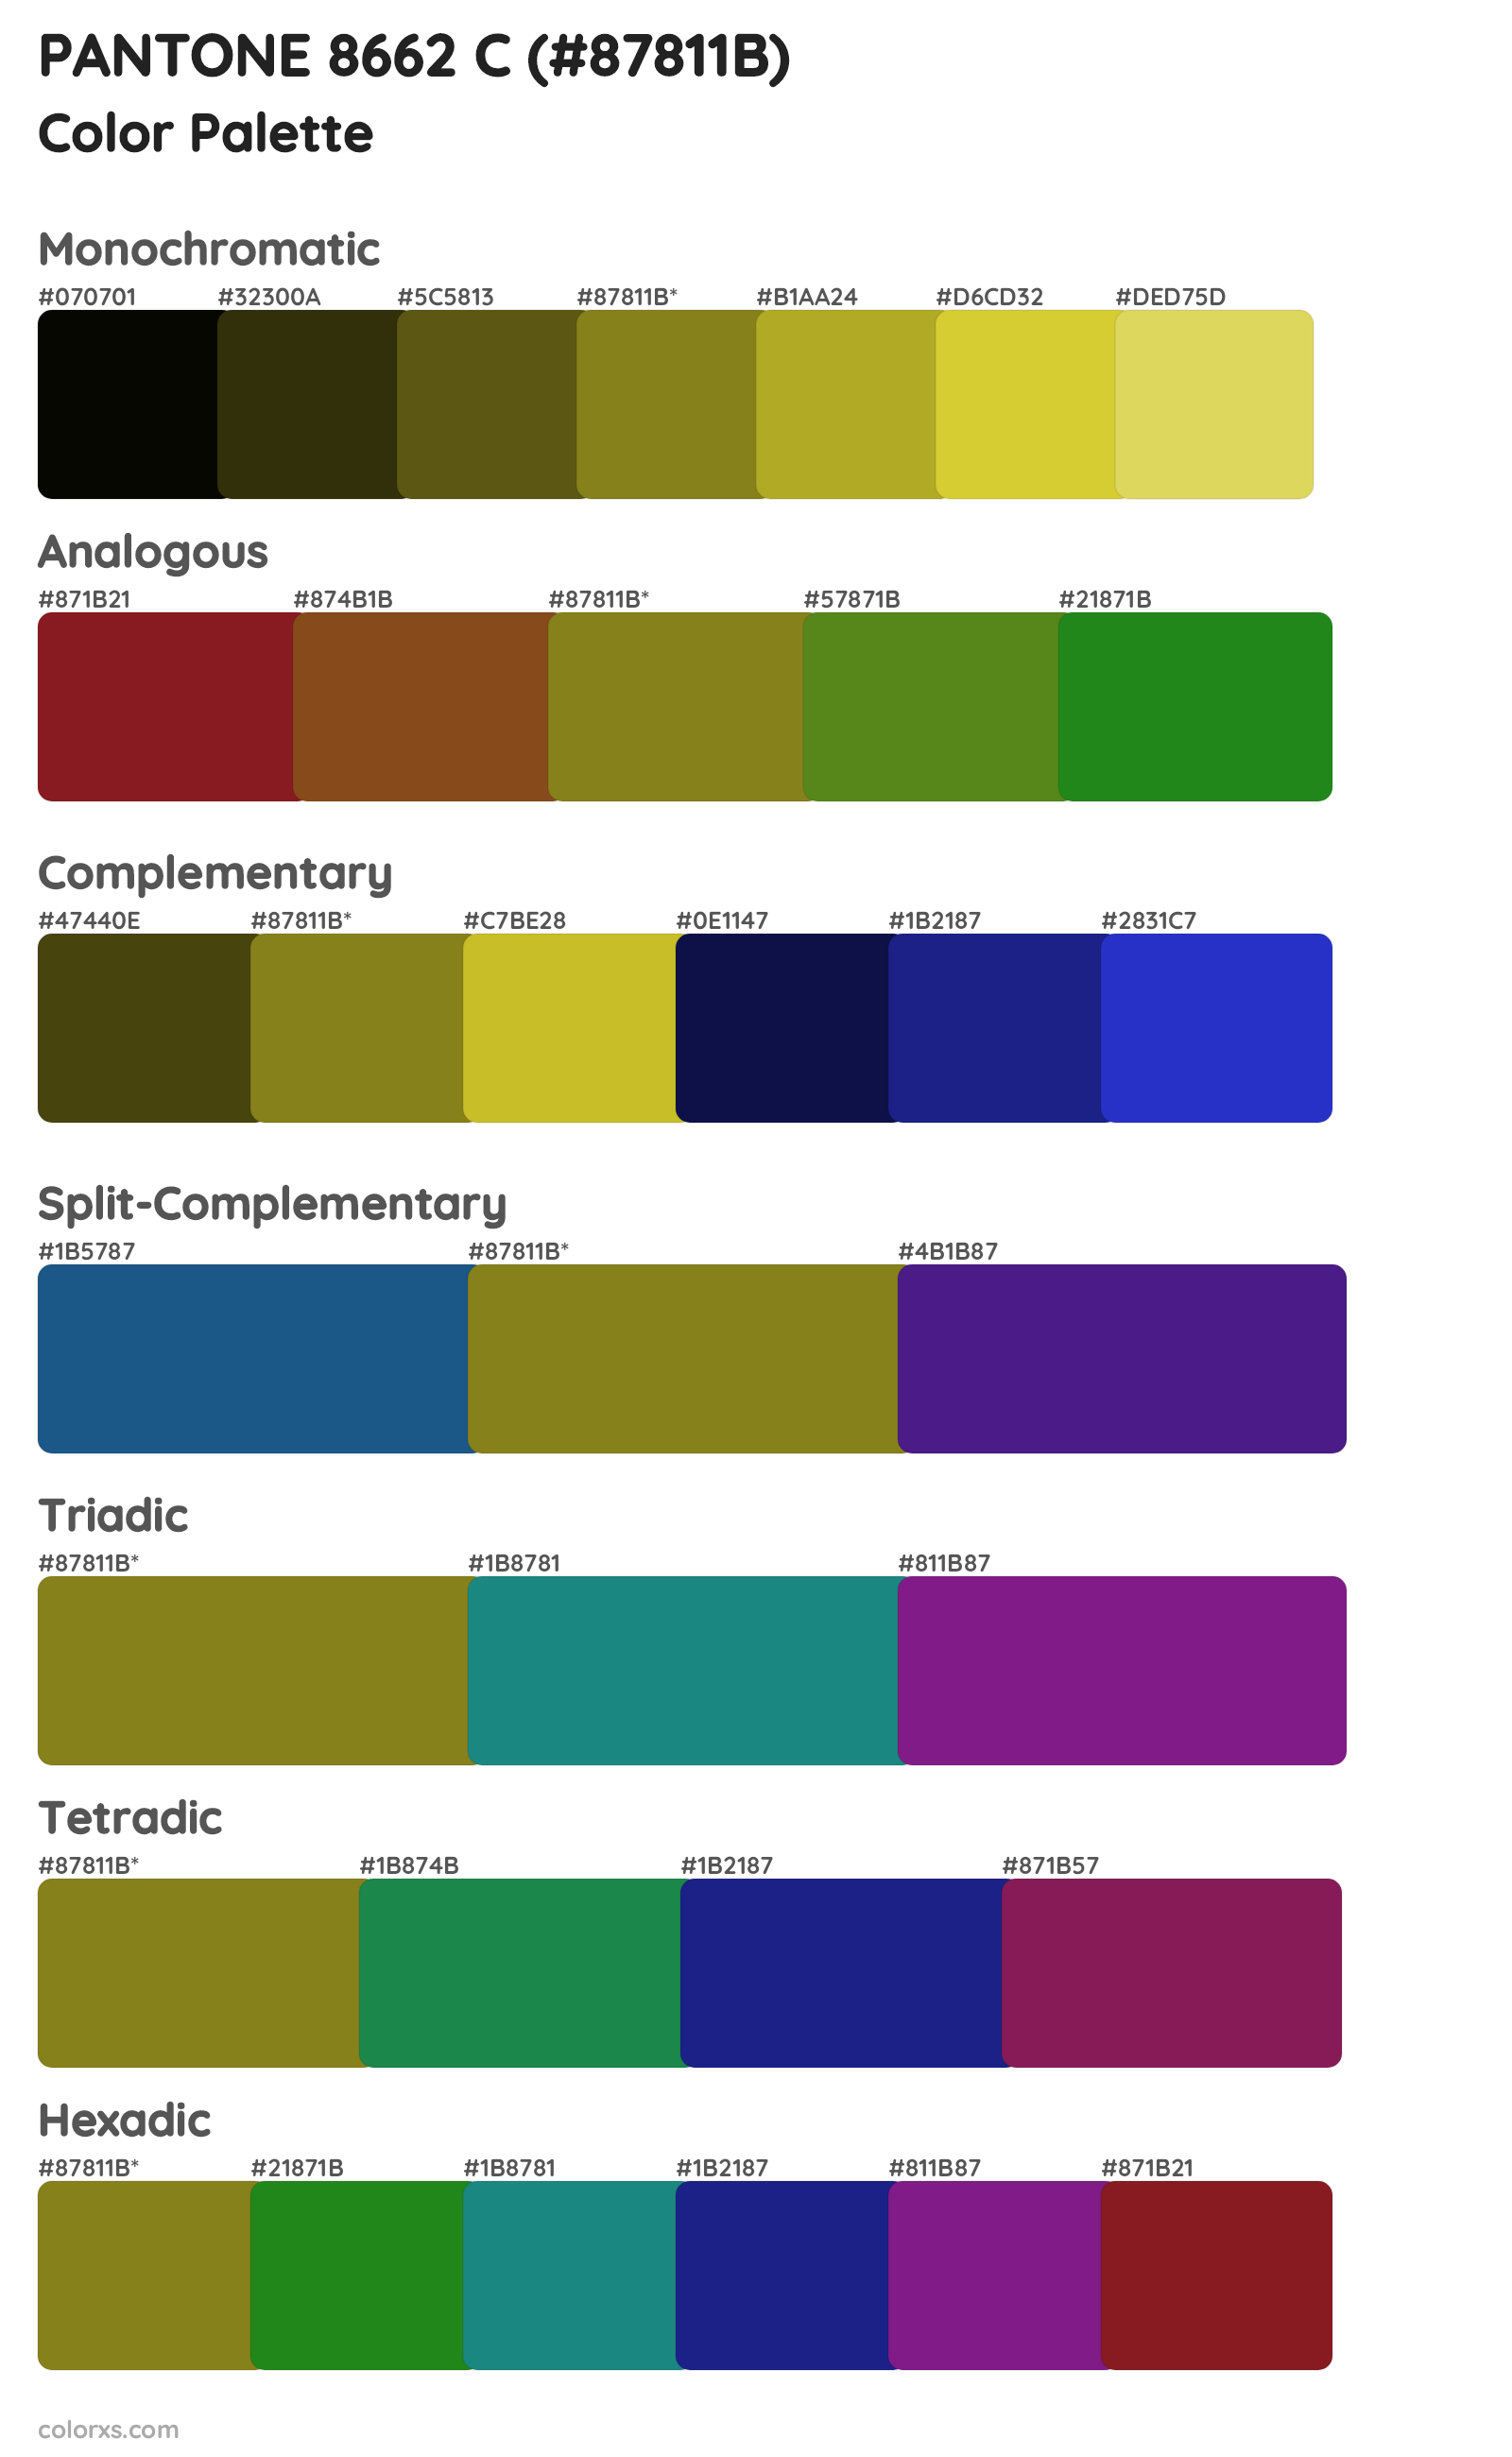 PANTONE 8662 C Color Scheme Palettes